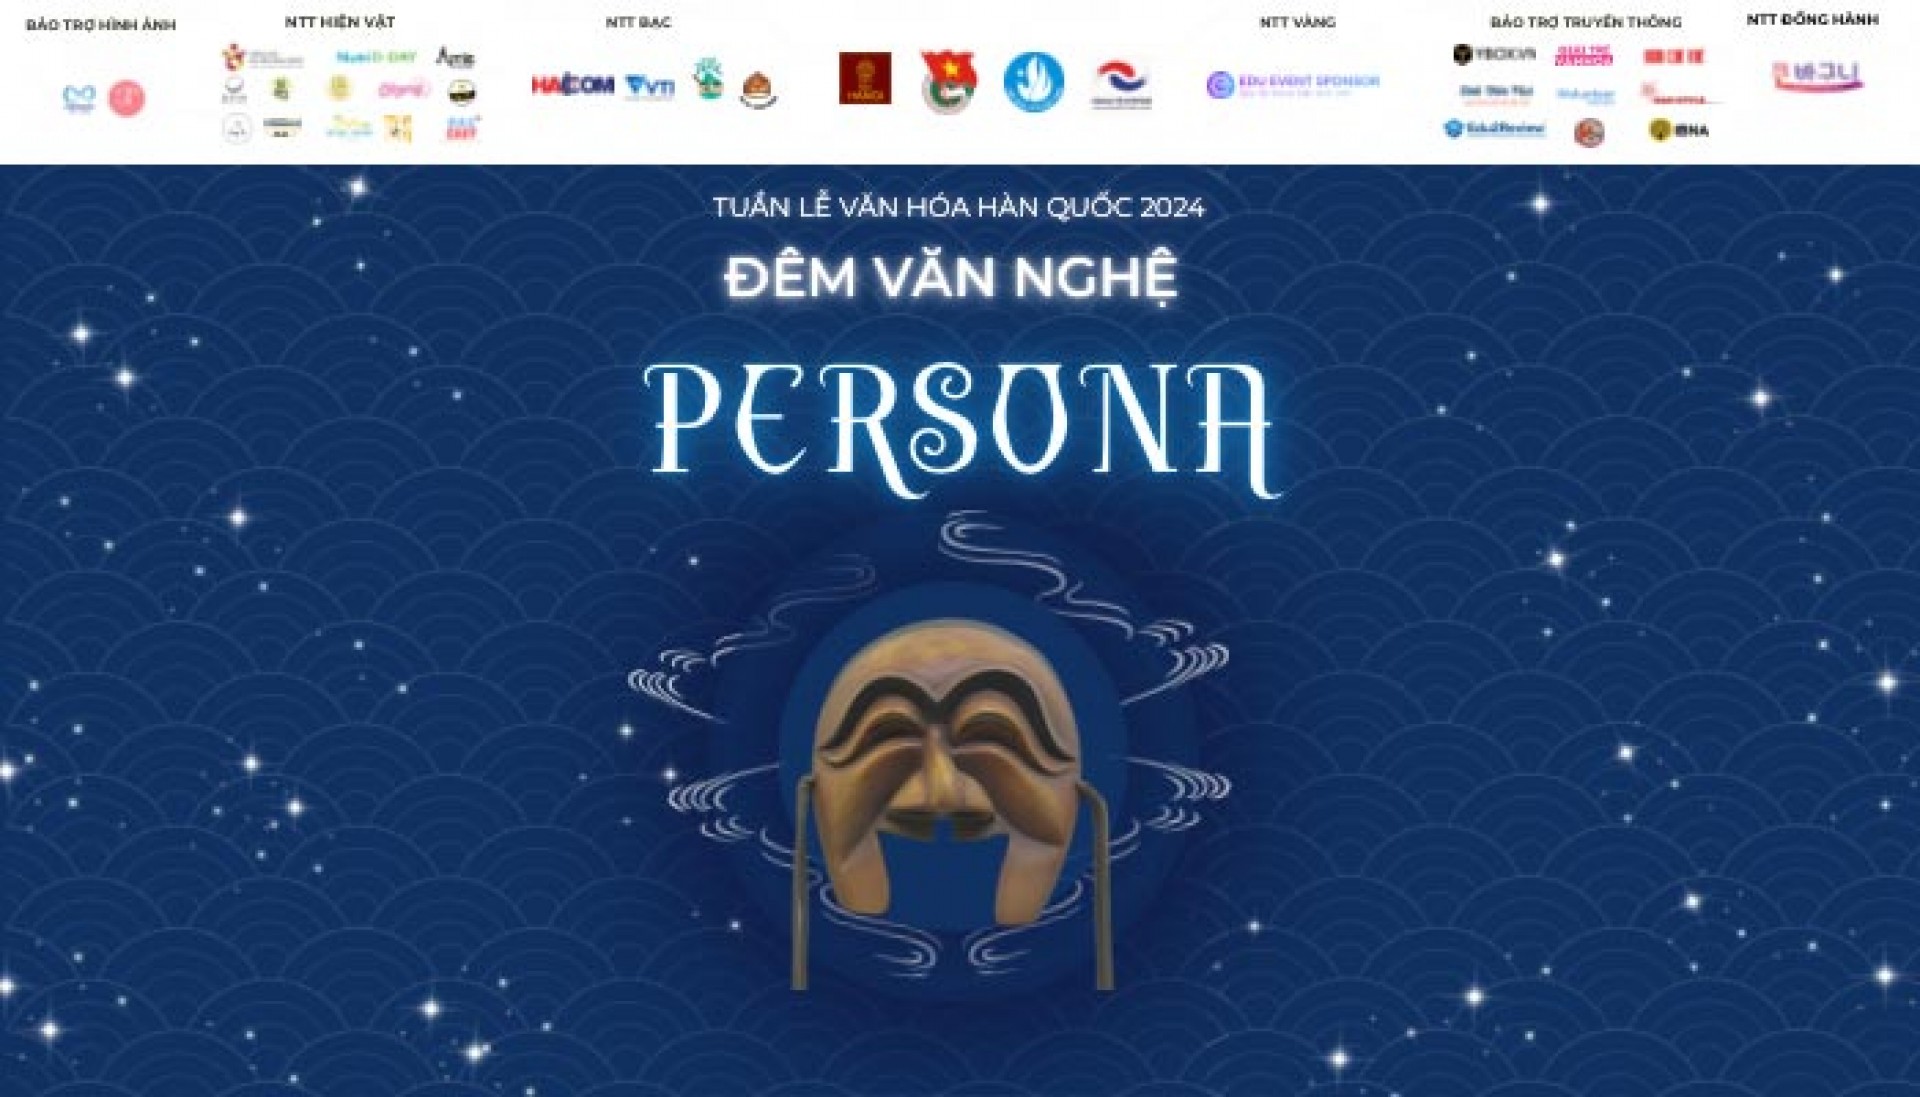 Đêm văn nghệ PERSONA - “Bữa tiệc” âm nhạc của Tuần lễ Văn hoá Hàn Quốc 2024